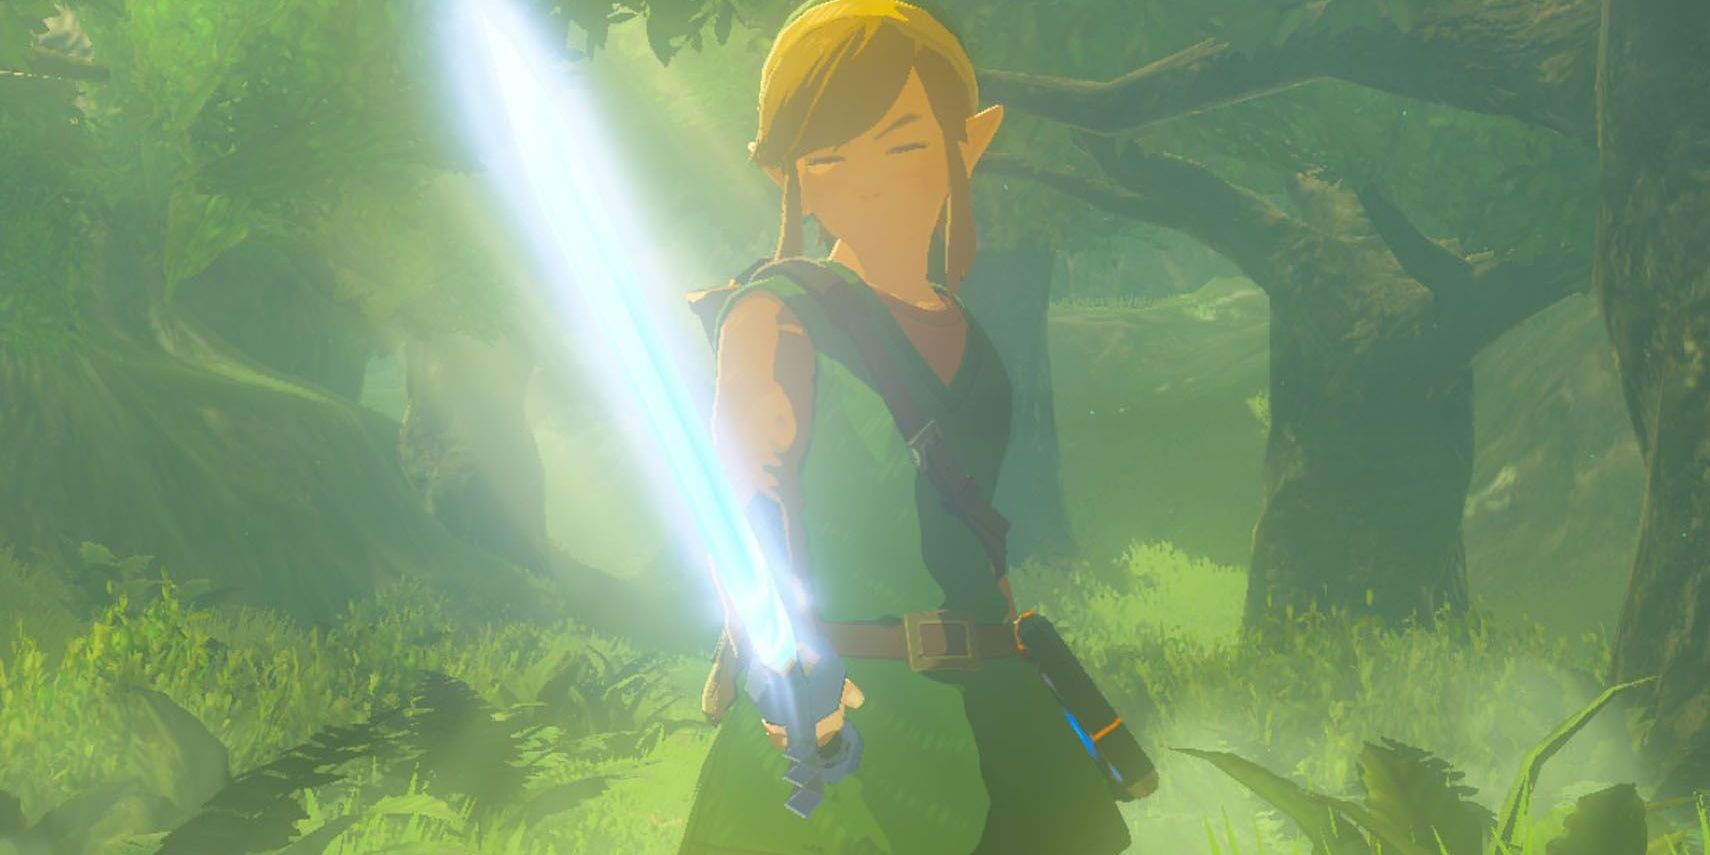 Link acquires Master Sword In Legend Of Zelda Breath Of The Wild